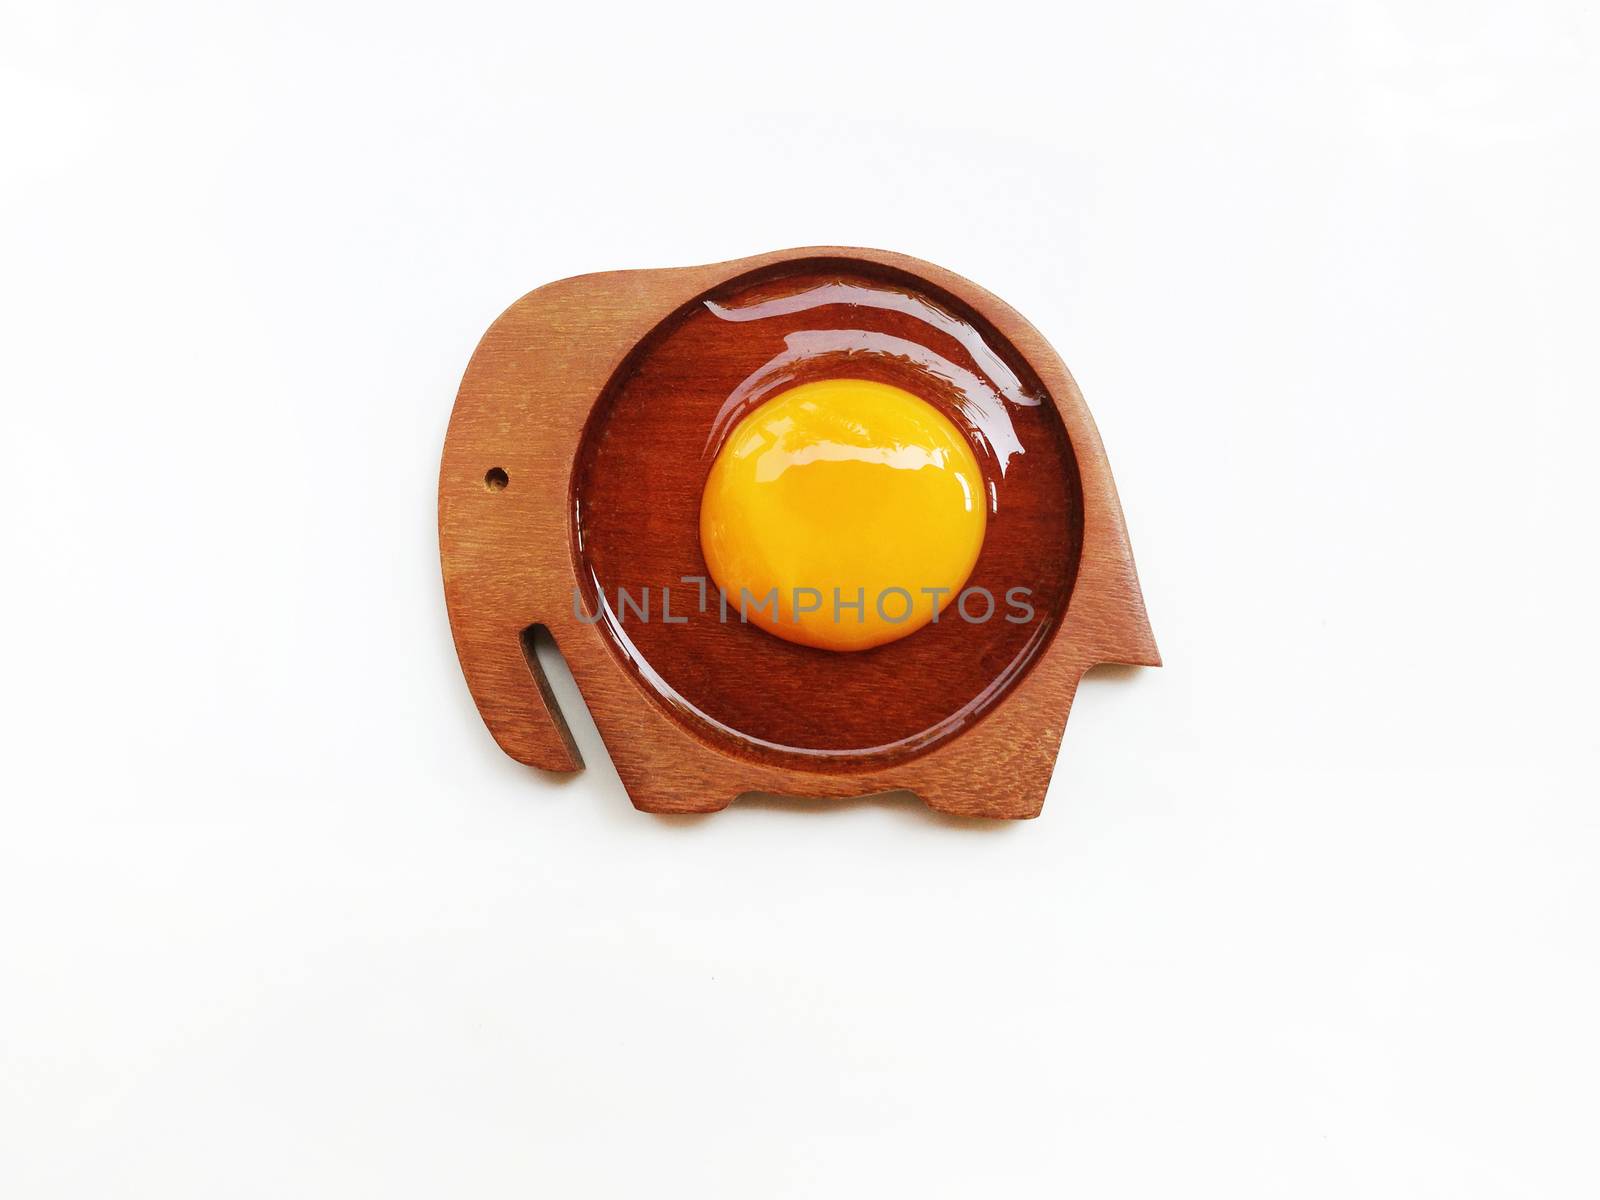 Egg yolk on wooden elephant shaped saucer on white background